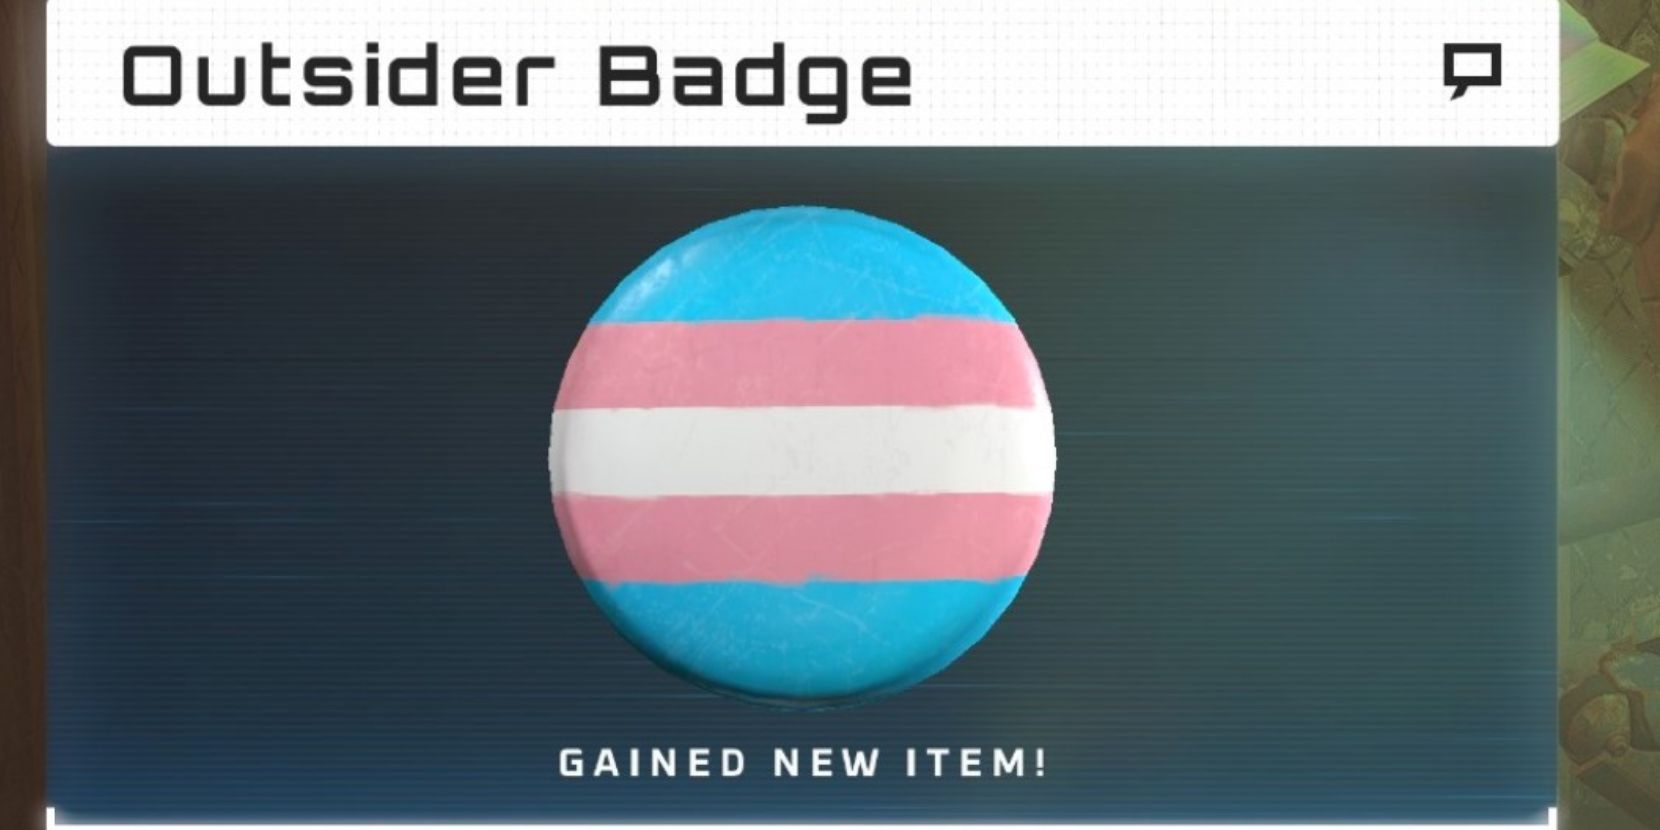 stray trans badge outsider pin